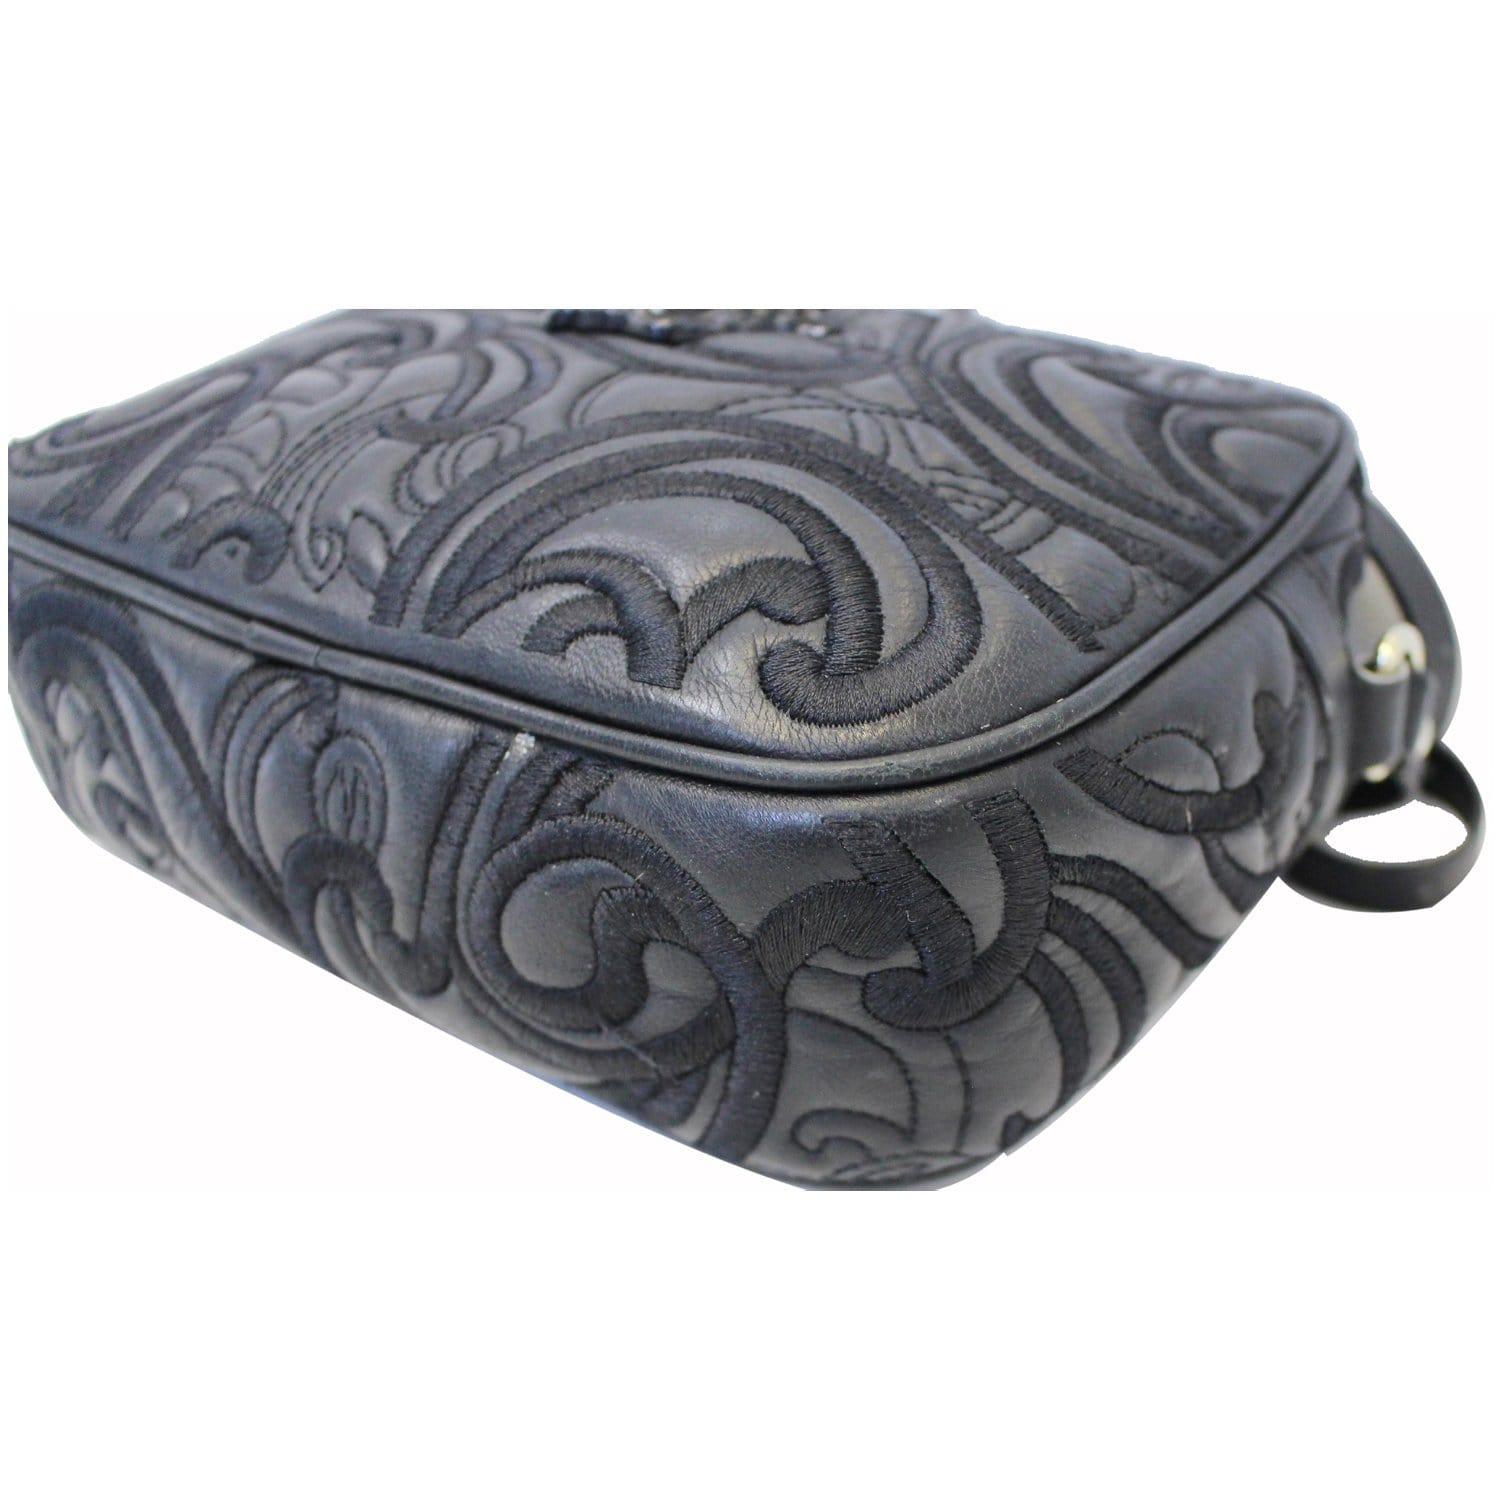 Versace Baroque Mosaic Nylon Shoulder Tote Bag Handbag